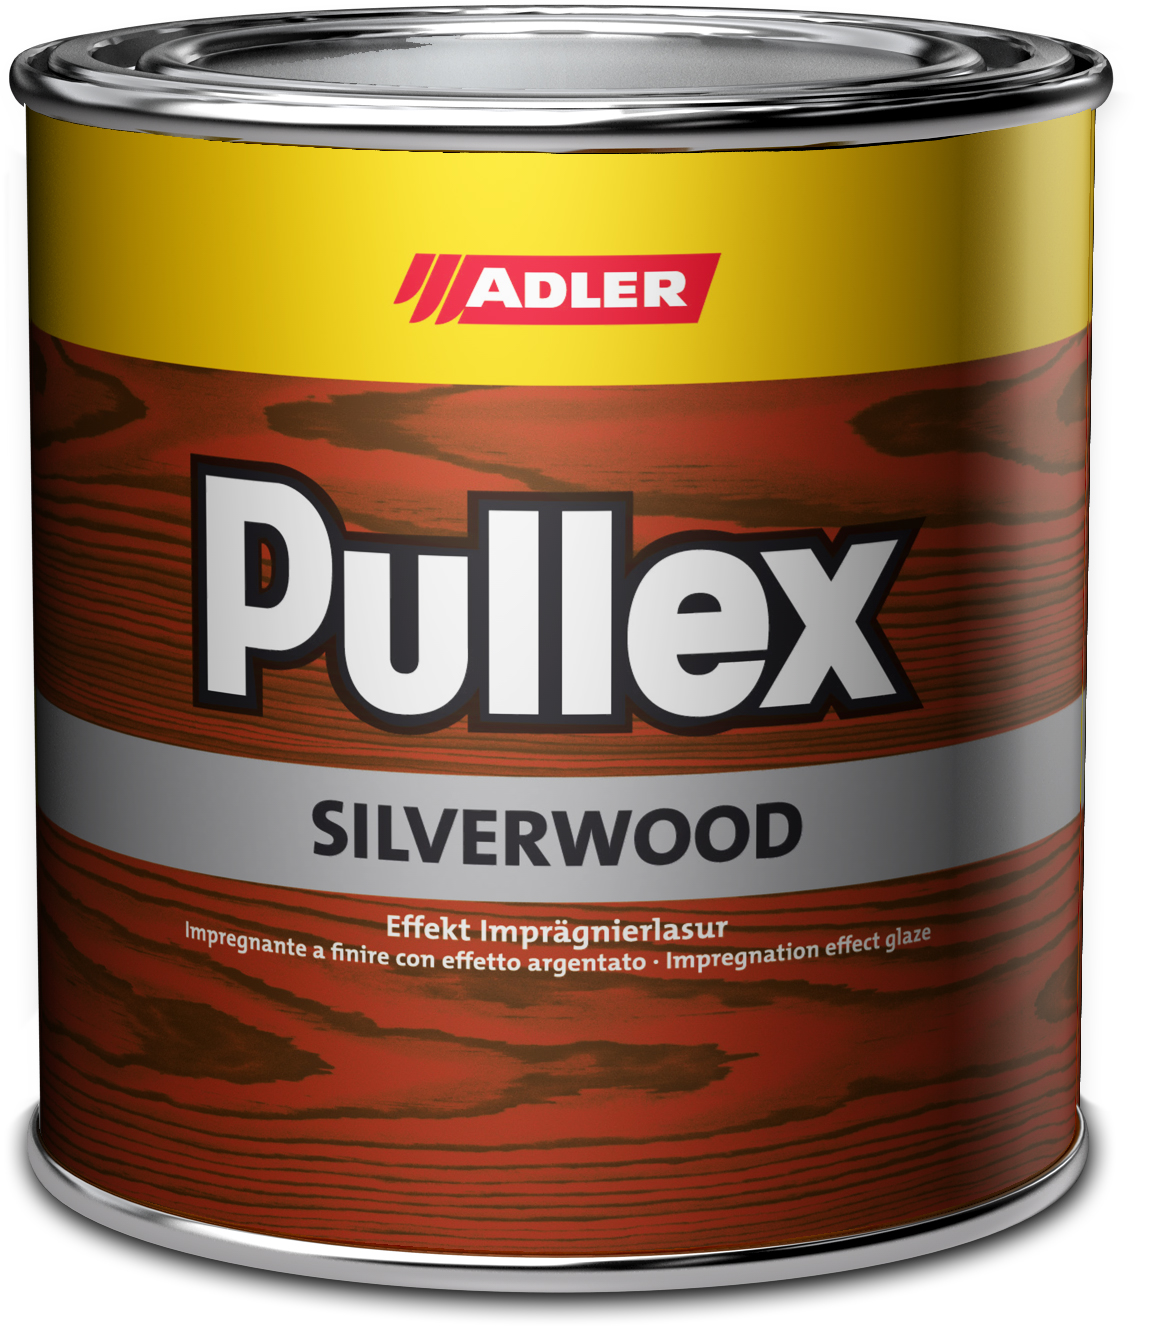 Adler Pullex Silverwood - efektná lazúra do exteriéru vytvárajúca vzhľad starého dreva 5 l silber - strieborná